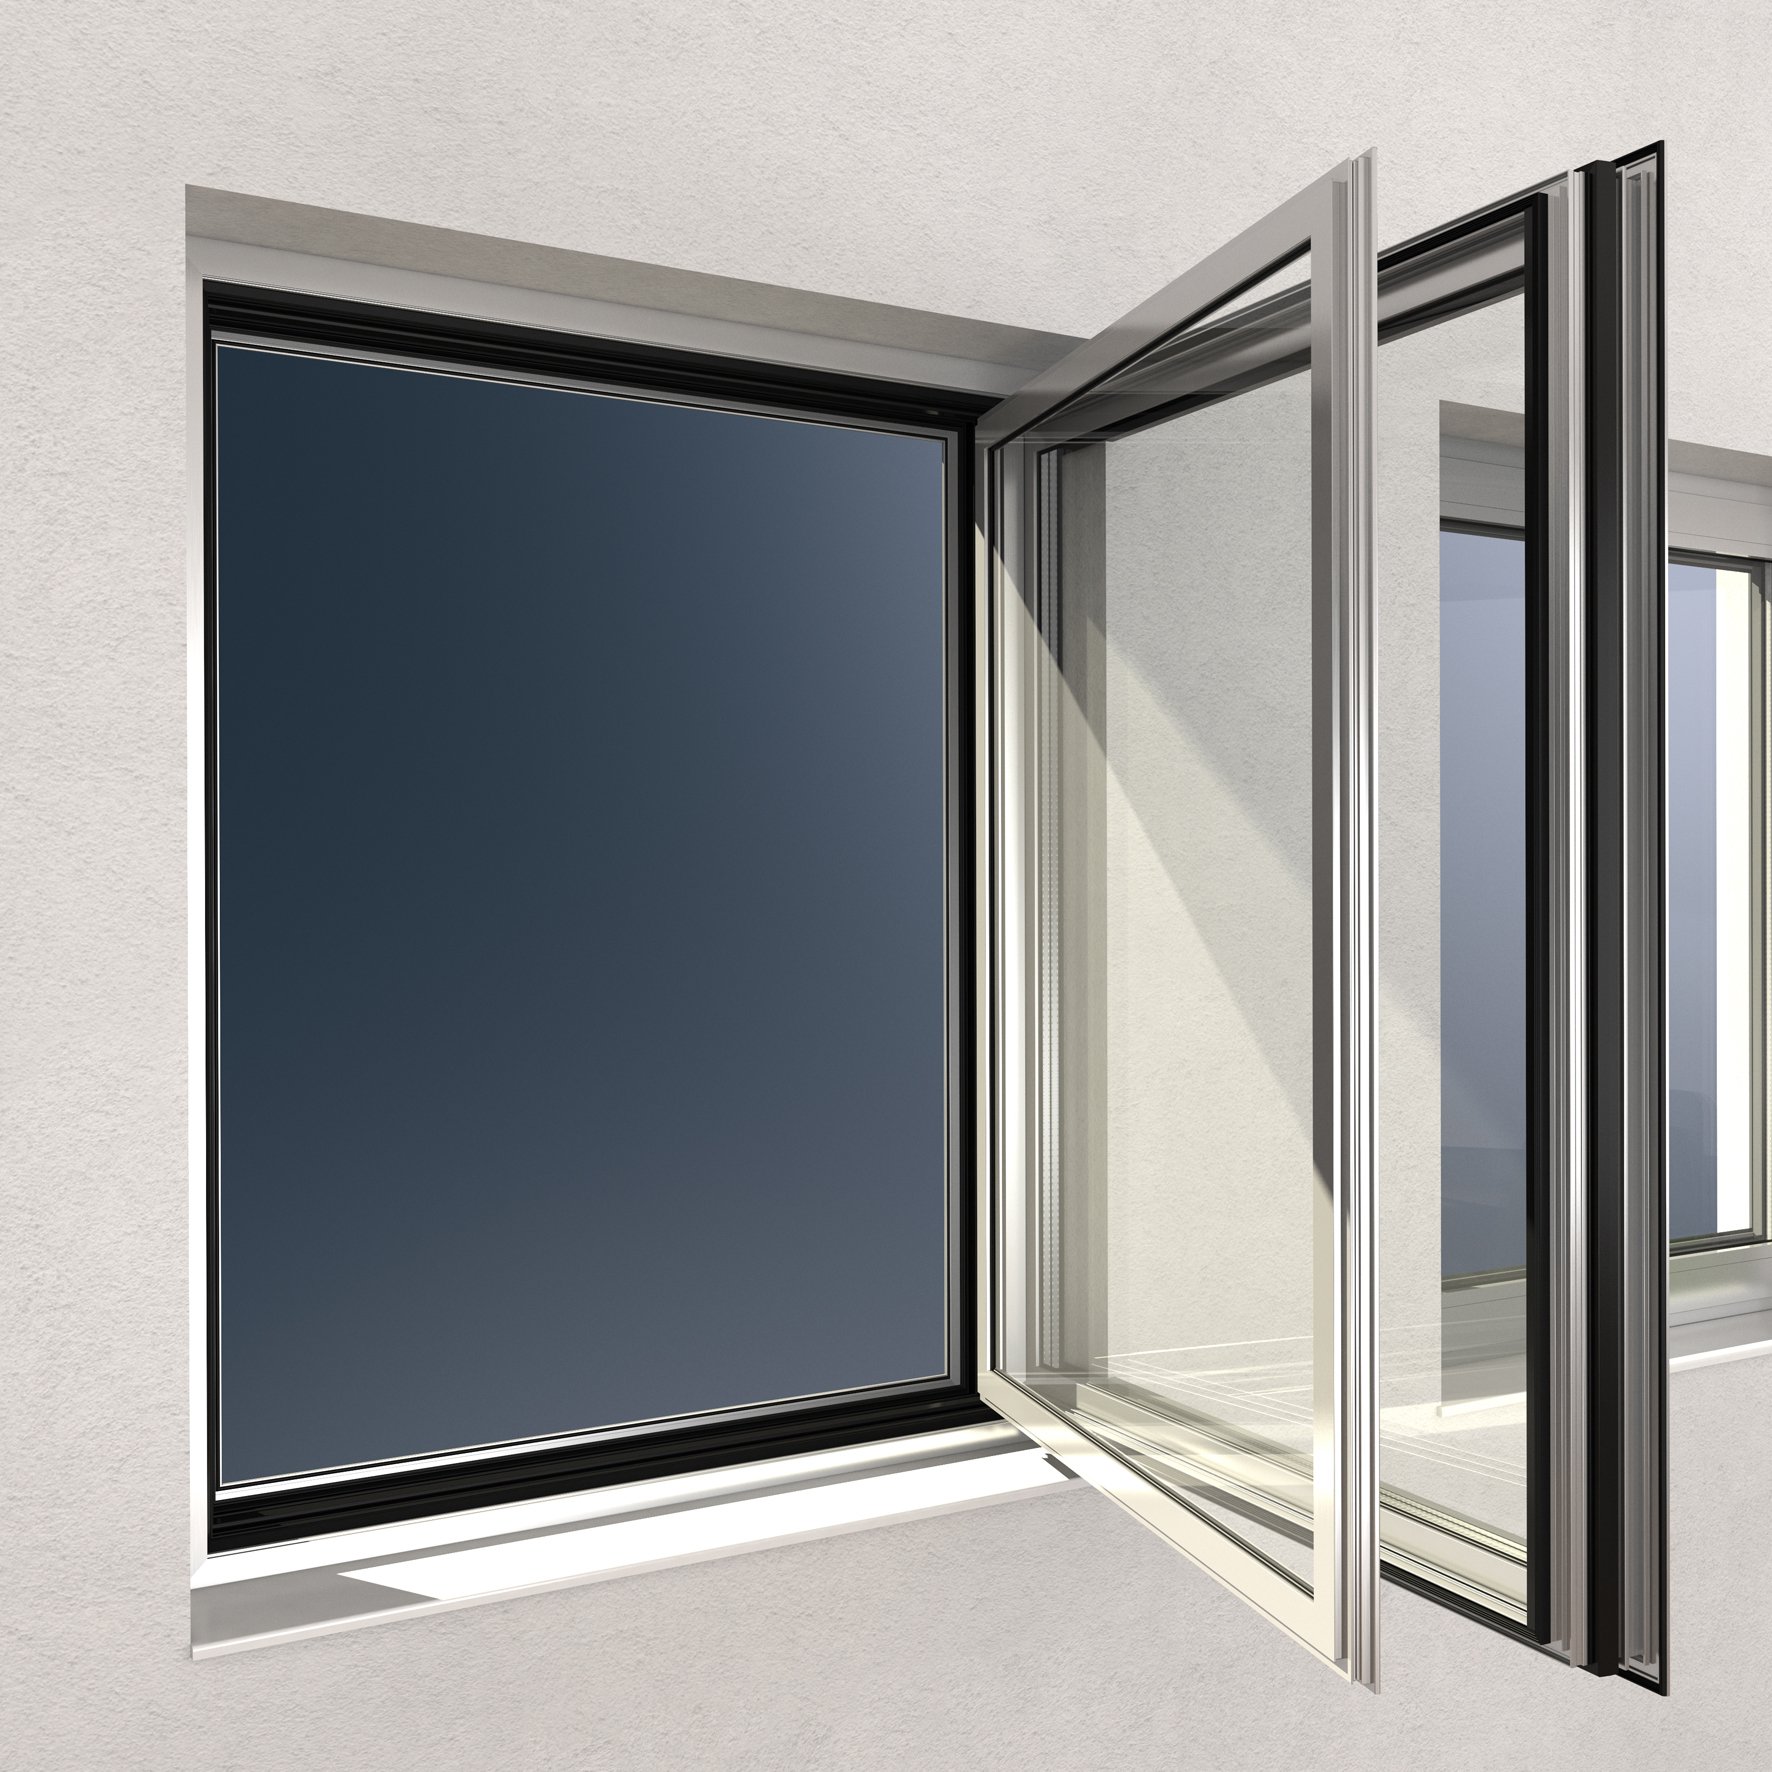 Алюминиевый профиль для окон купить. Алюминиевые окна Schuco. Алюминиевые окна Шуко. Шуко профиль алюминиевый. Schuco профиль алюминиевый.